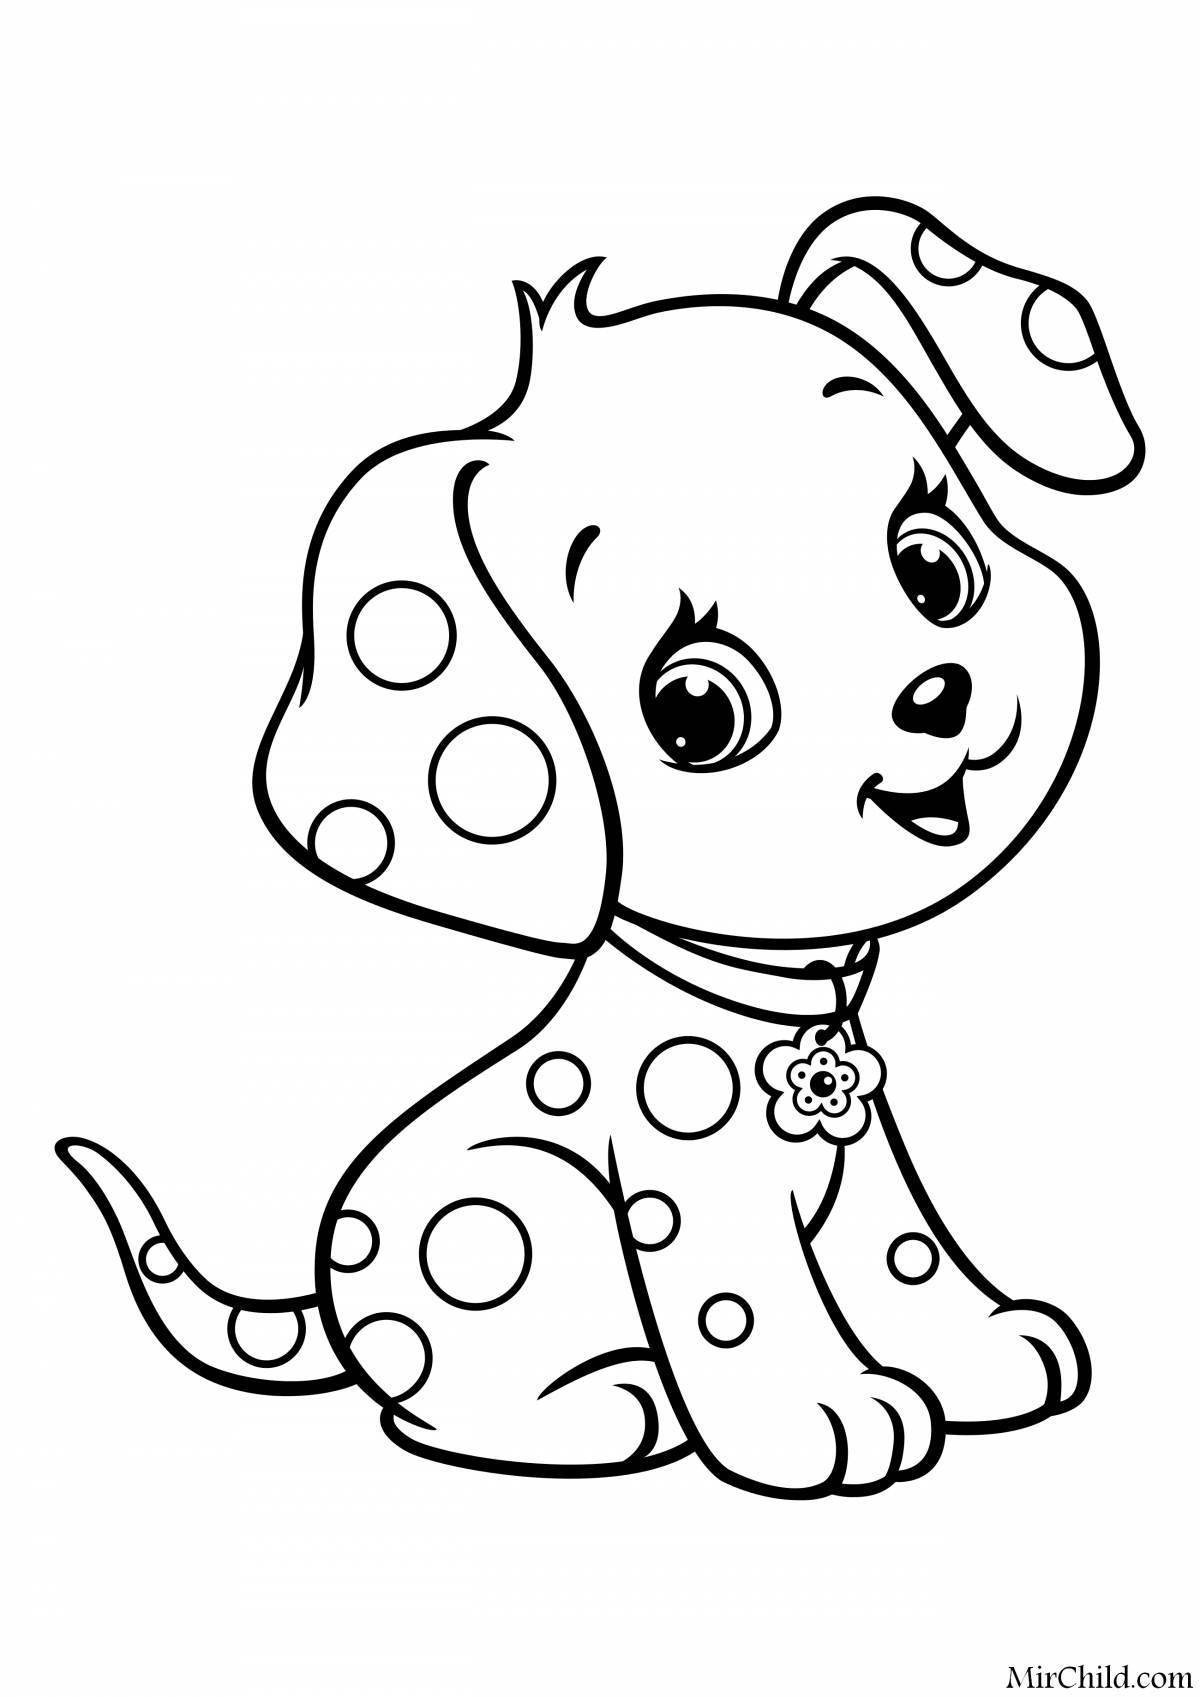 Распечатать раскраски собак, картинки собак, рисунки собак разных пород